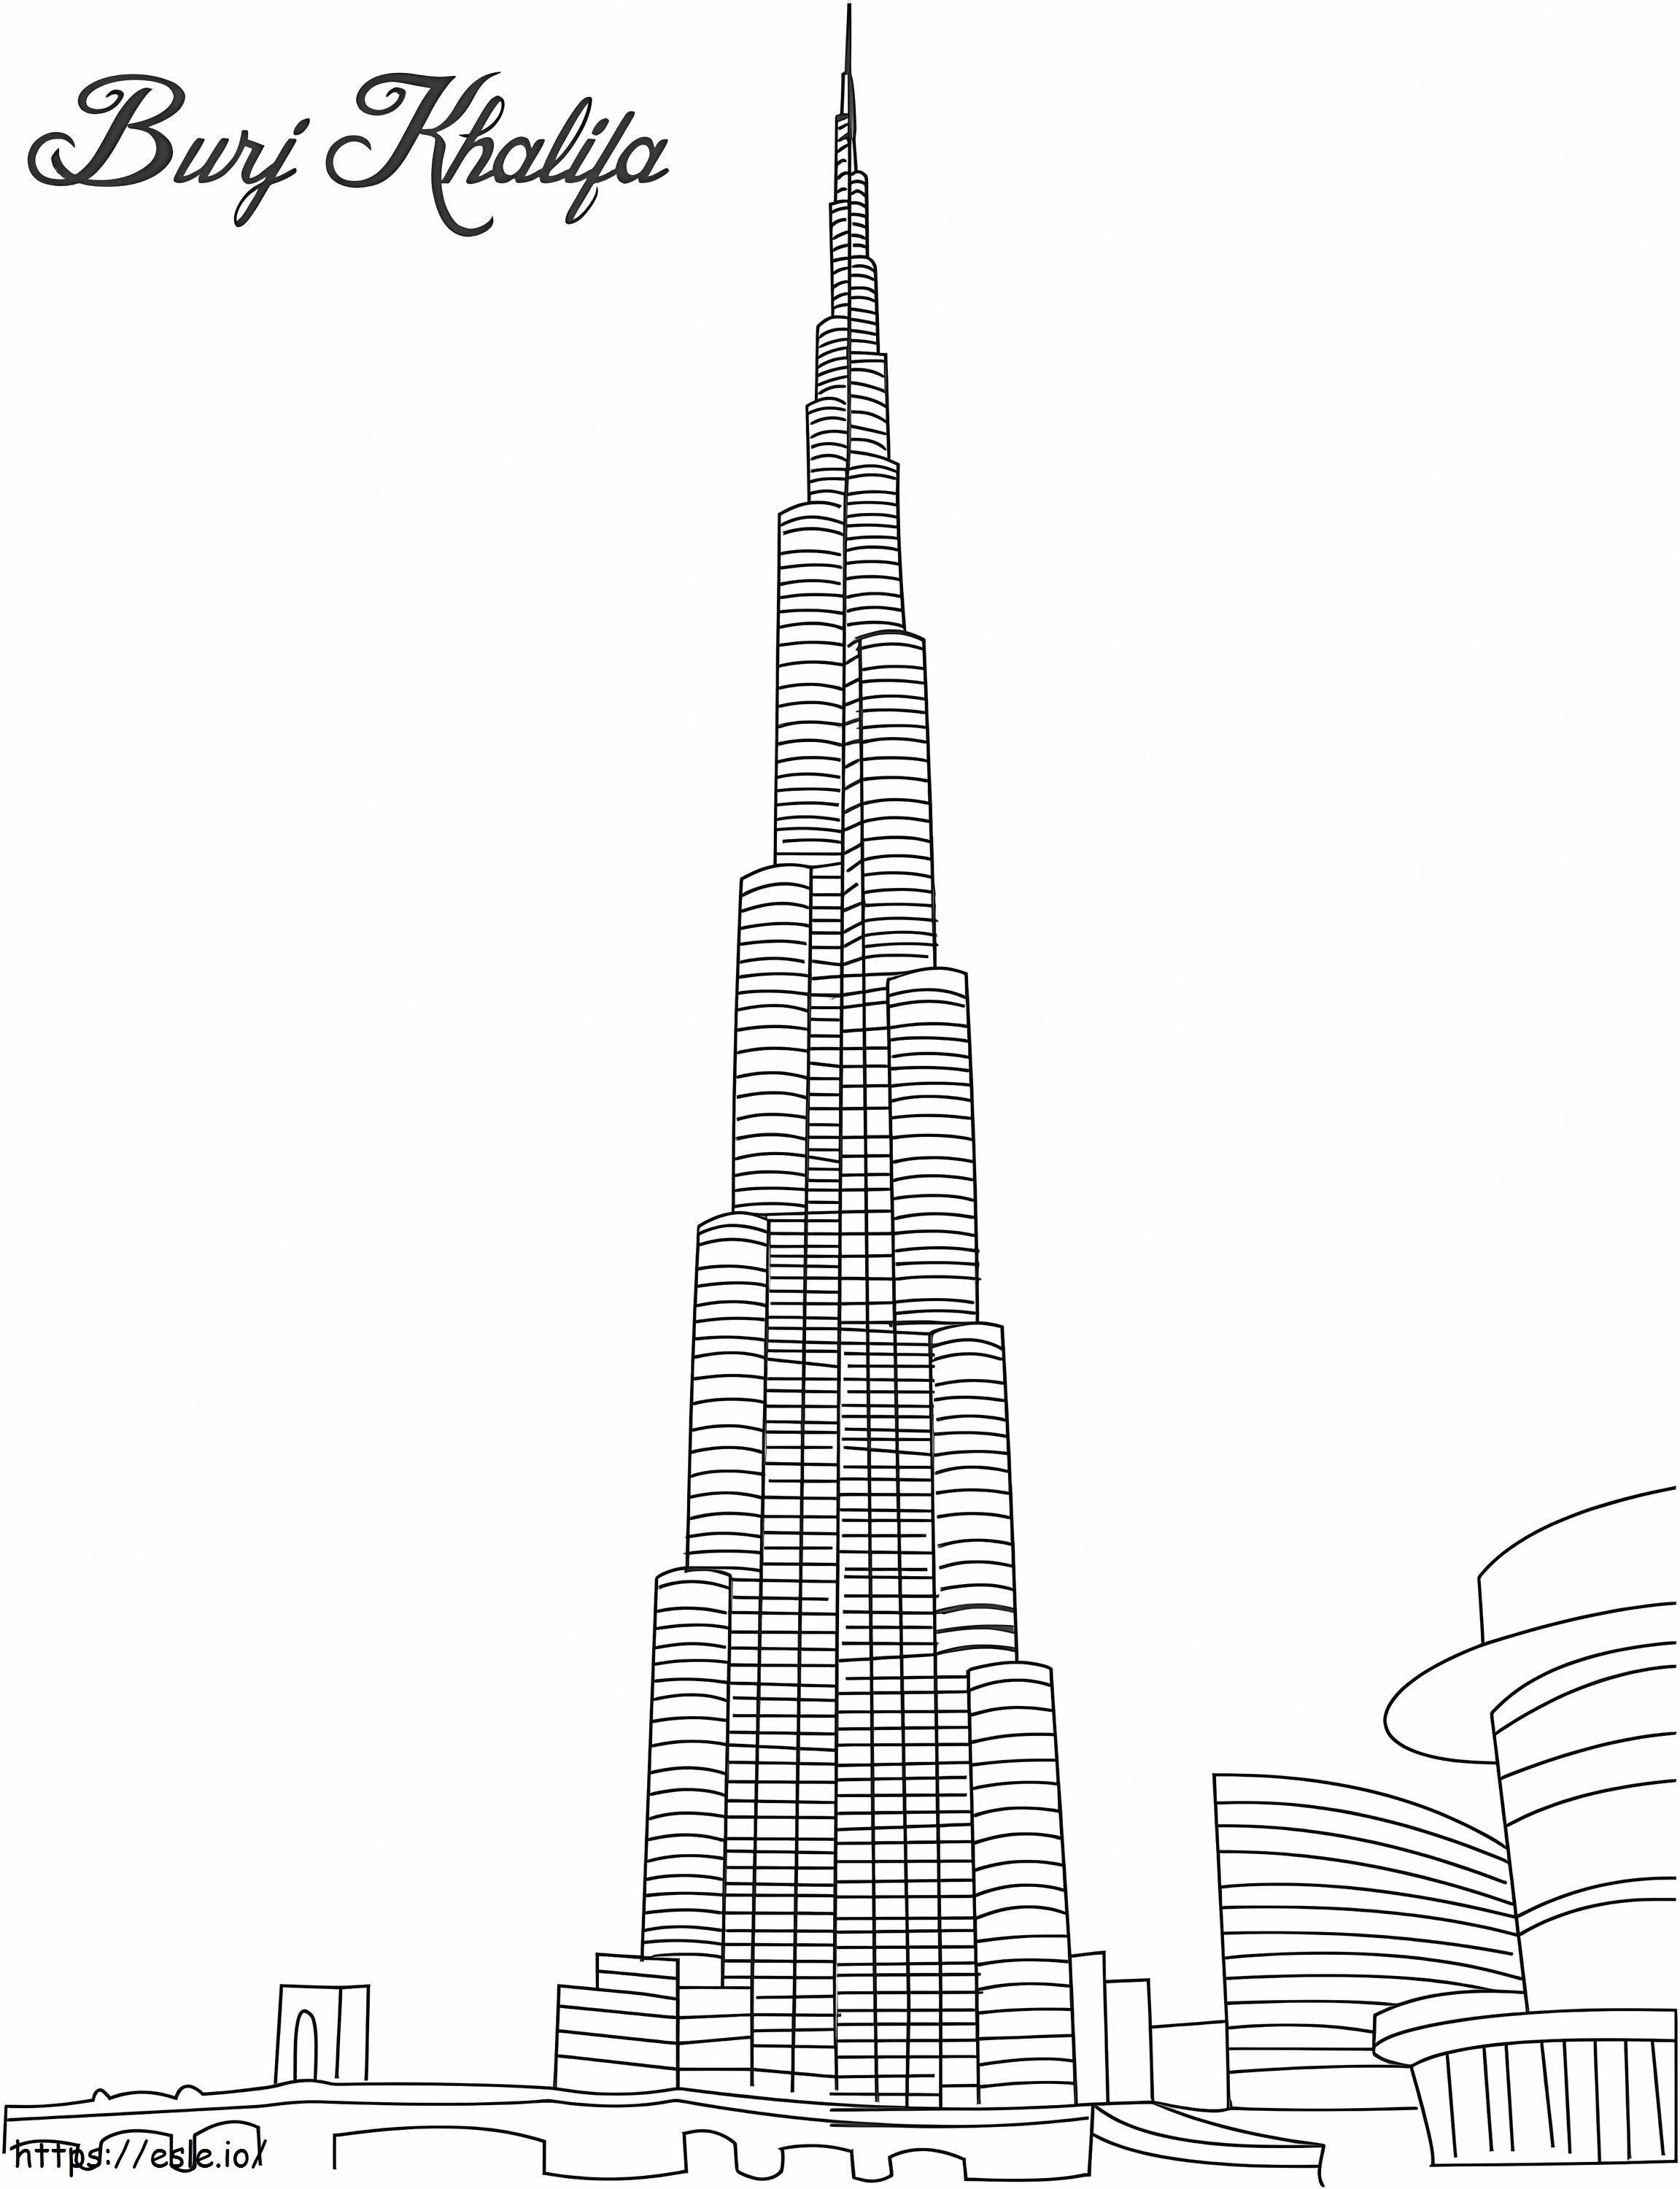 Wieża Burdż Chalifa kolorowanka